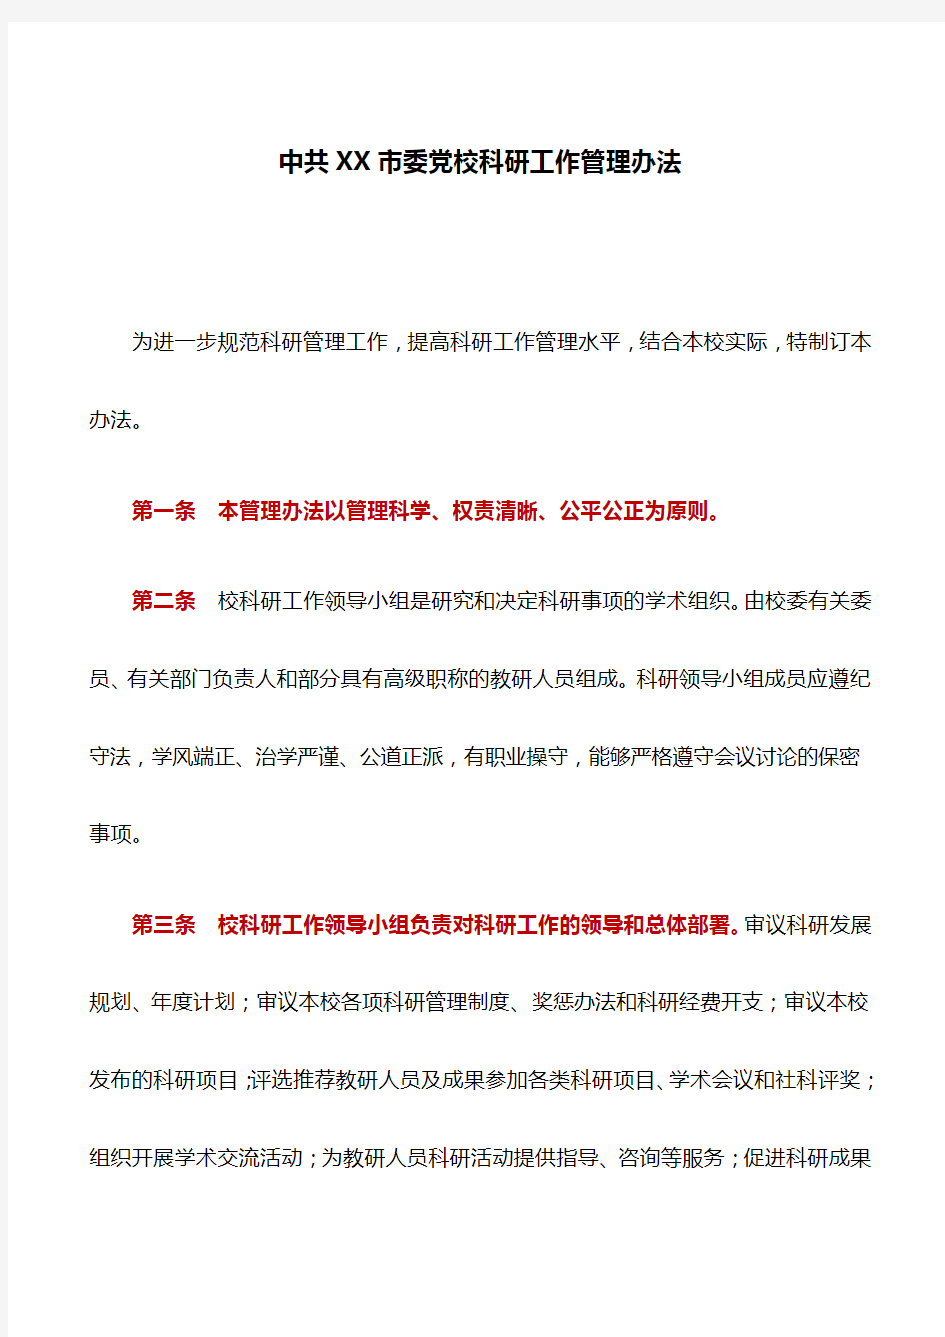 规章制度：中共XX市委党校科研工作管理办法